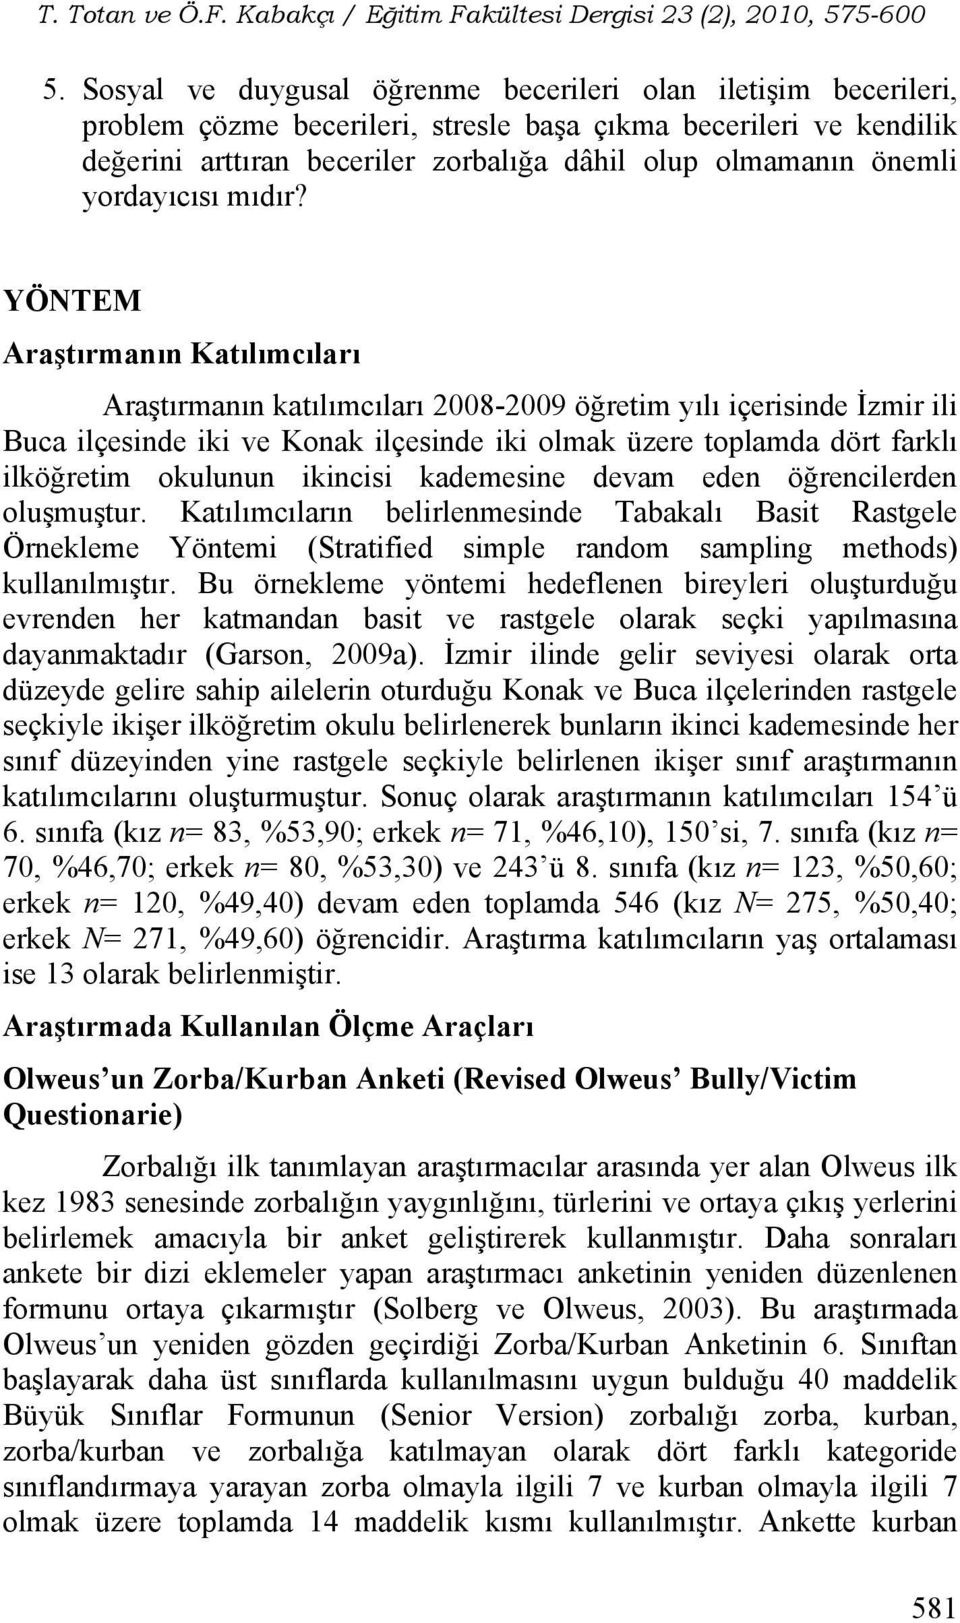 YÖNTEM Araştırmanın Katılımcıları Araştırmanın katılımcıları 2008-2009 öğretim yılı içerisinde İzmir ili Buca ilçesinde iki ve Konak ilçesinde iki olmak üzere toplamda dört farklı ilköğretim okulunun